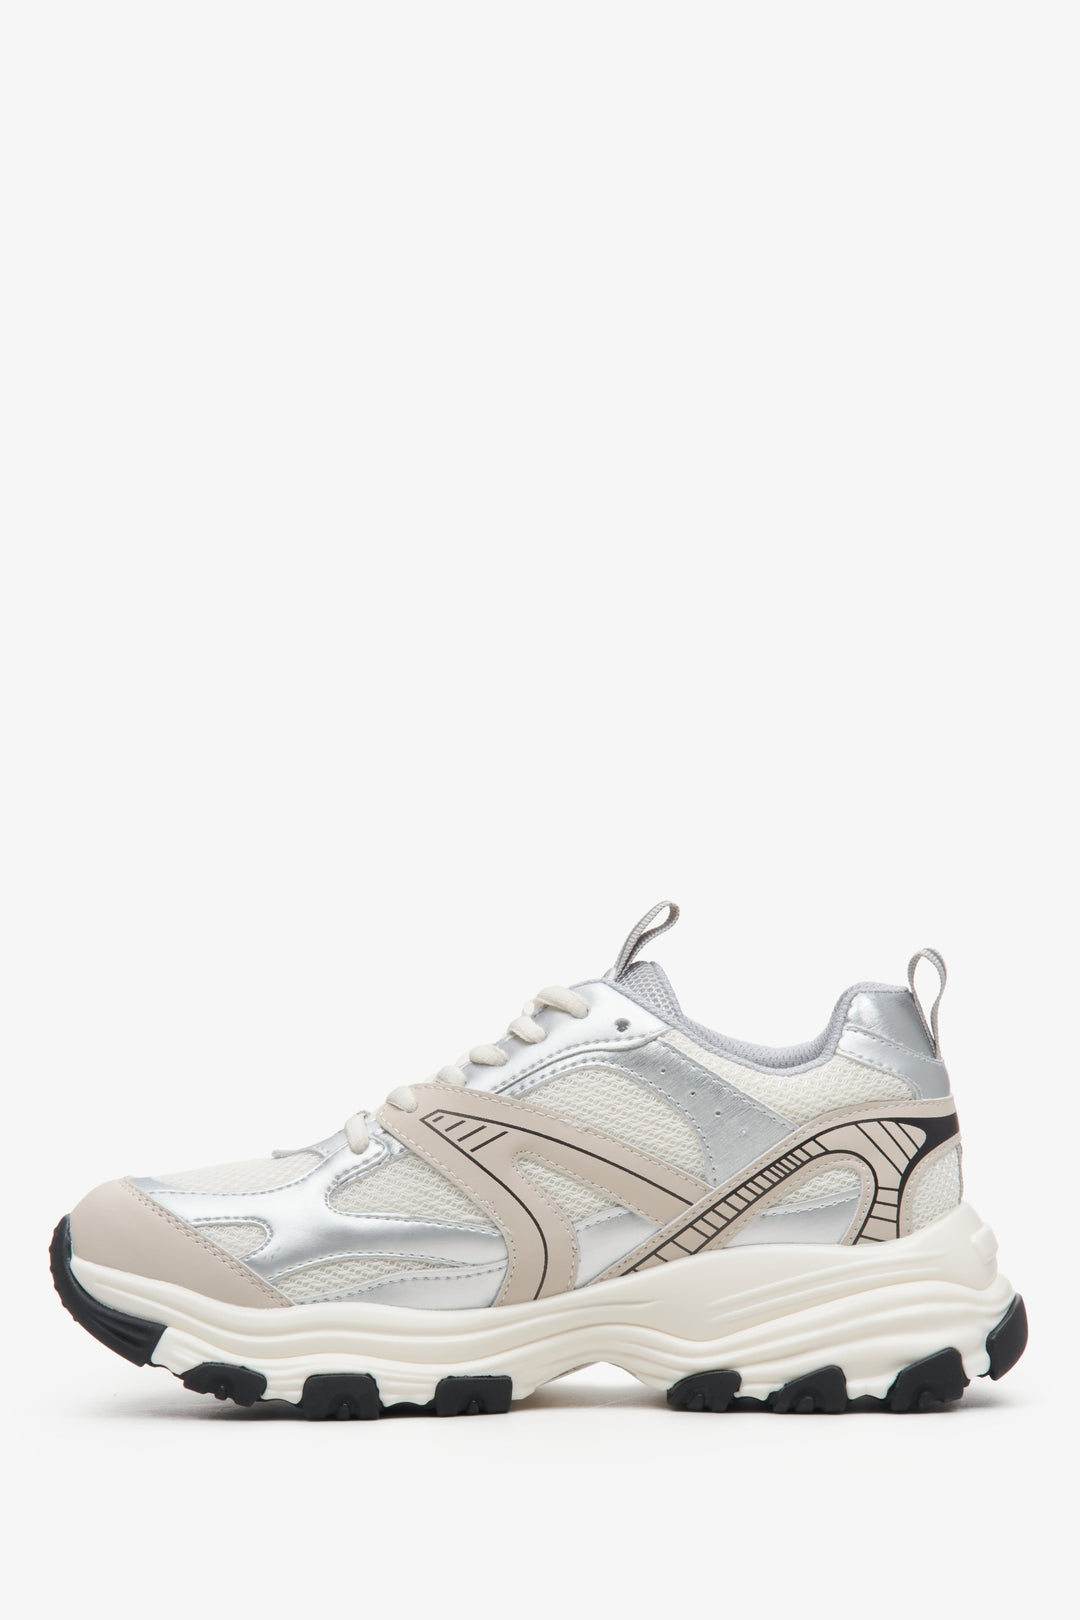 ES8 women's light beige-silver sneakers - side profile of the shoe.